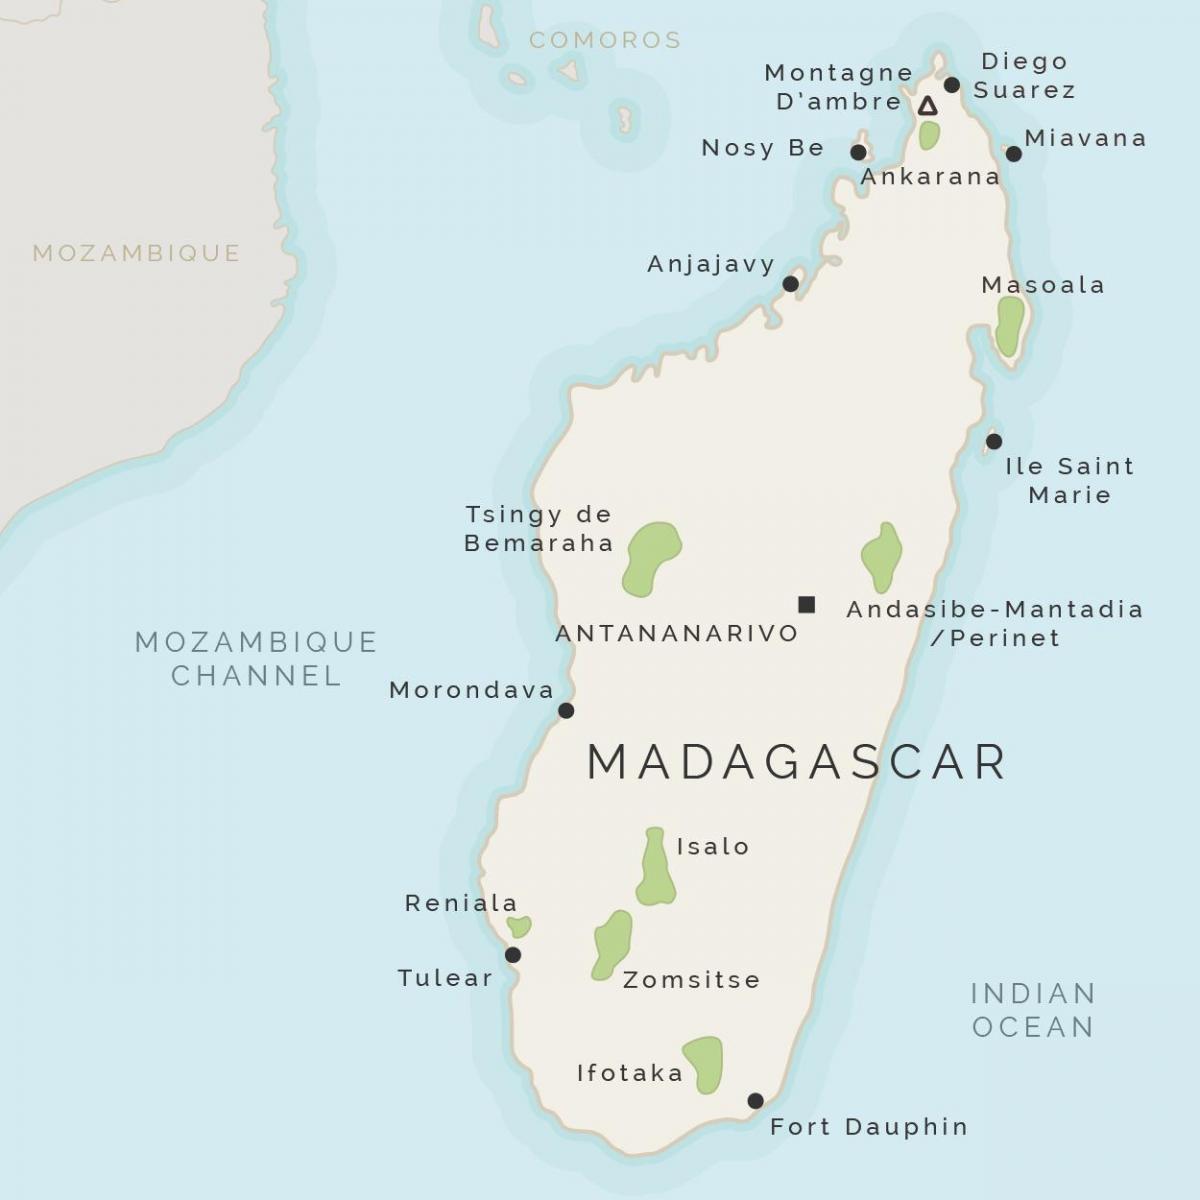 નકશો મેડાગાસ્કર અને આસપાસના ટાપુઓ